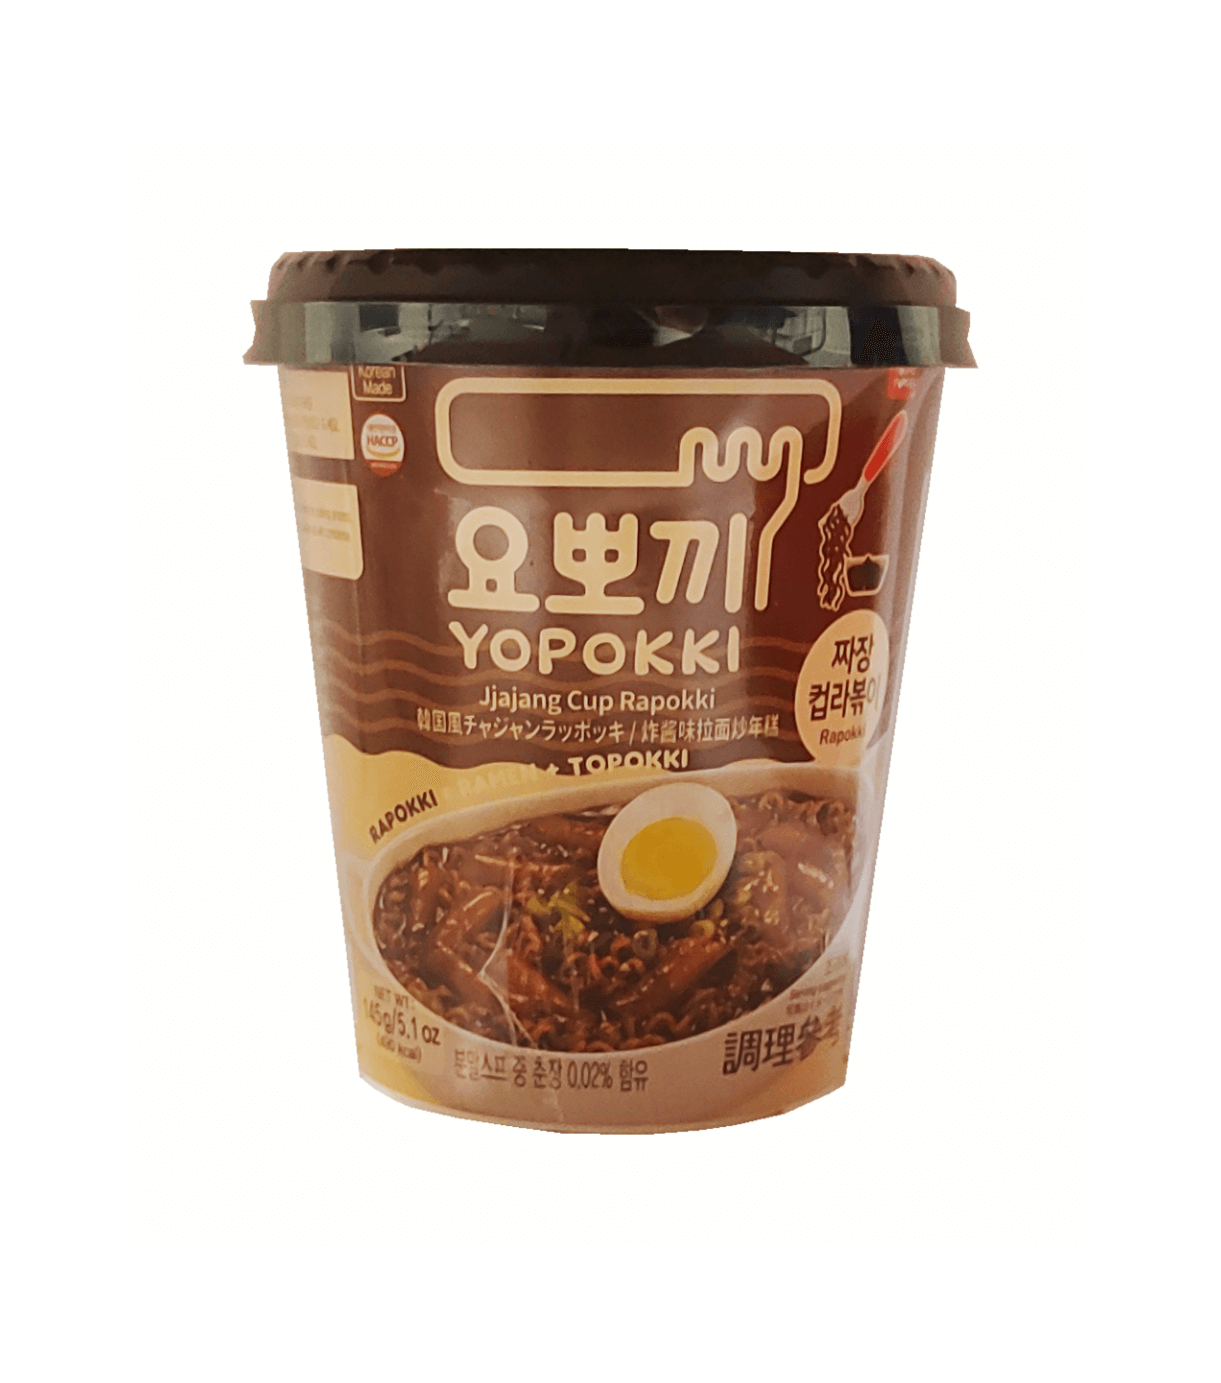 韩国网路人气推荐 - 拉面/年糕杯 Jjajang味 145g Yopokki 韩国